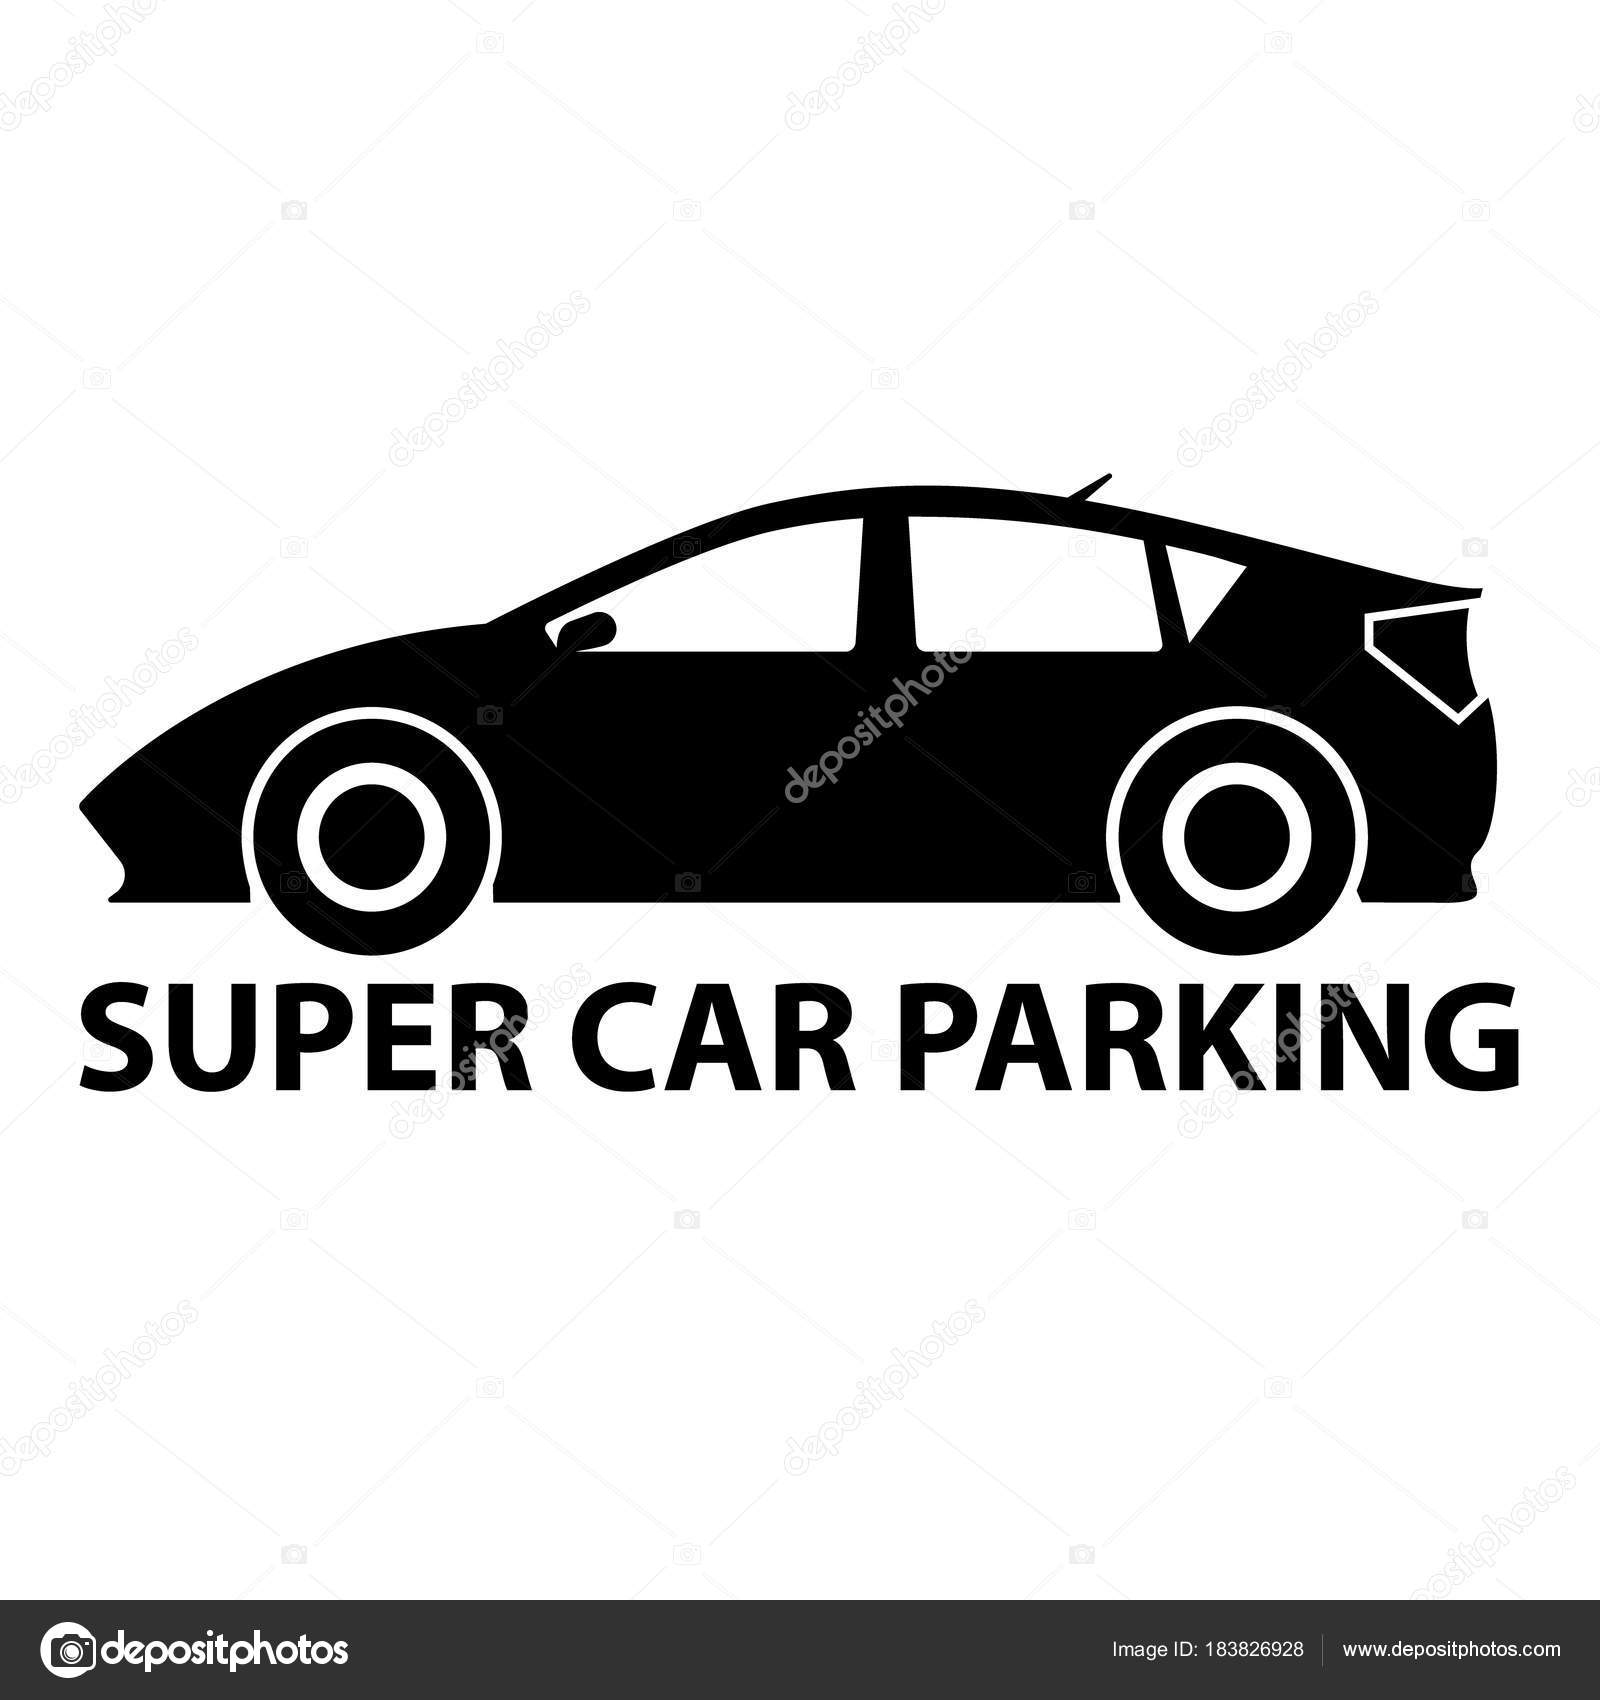 Super samochód, parking znak w czerni i bieli. Wektor